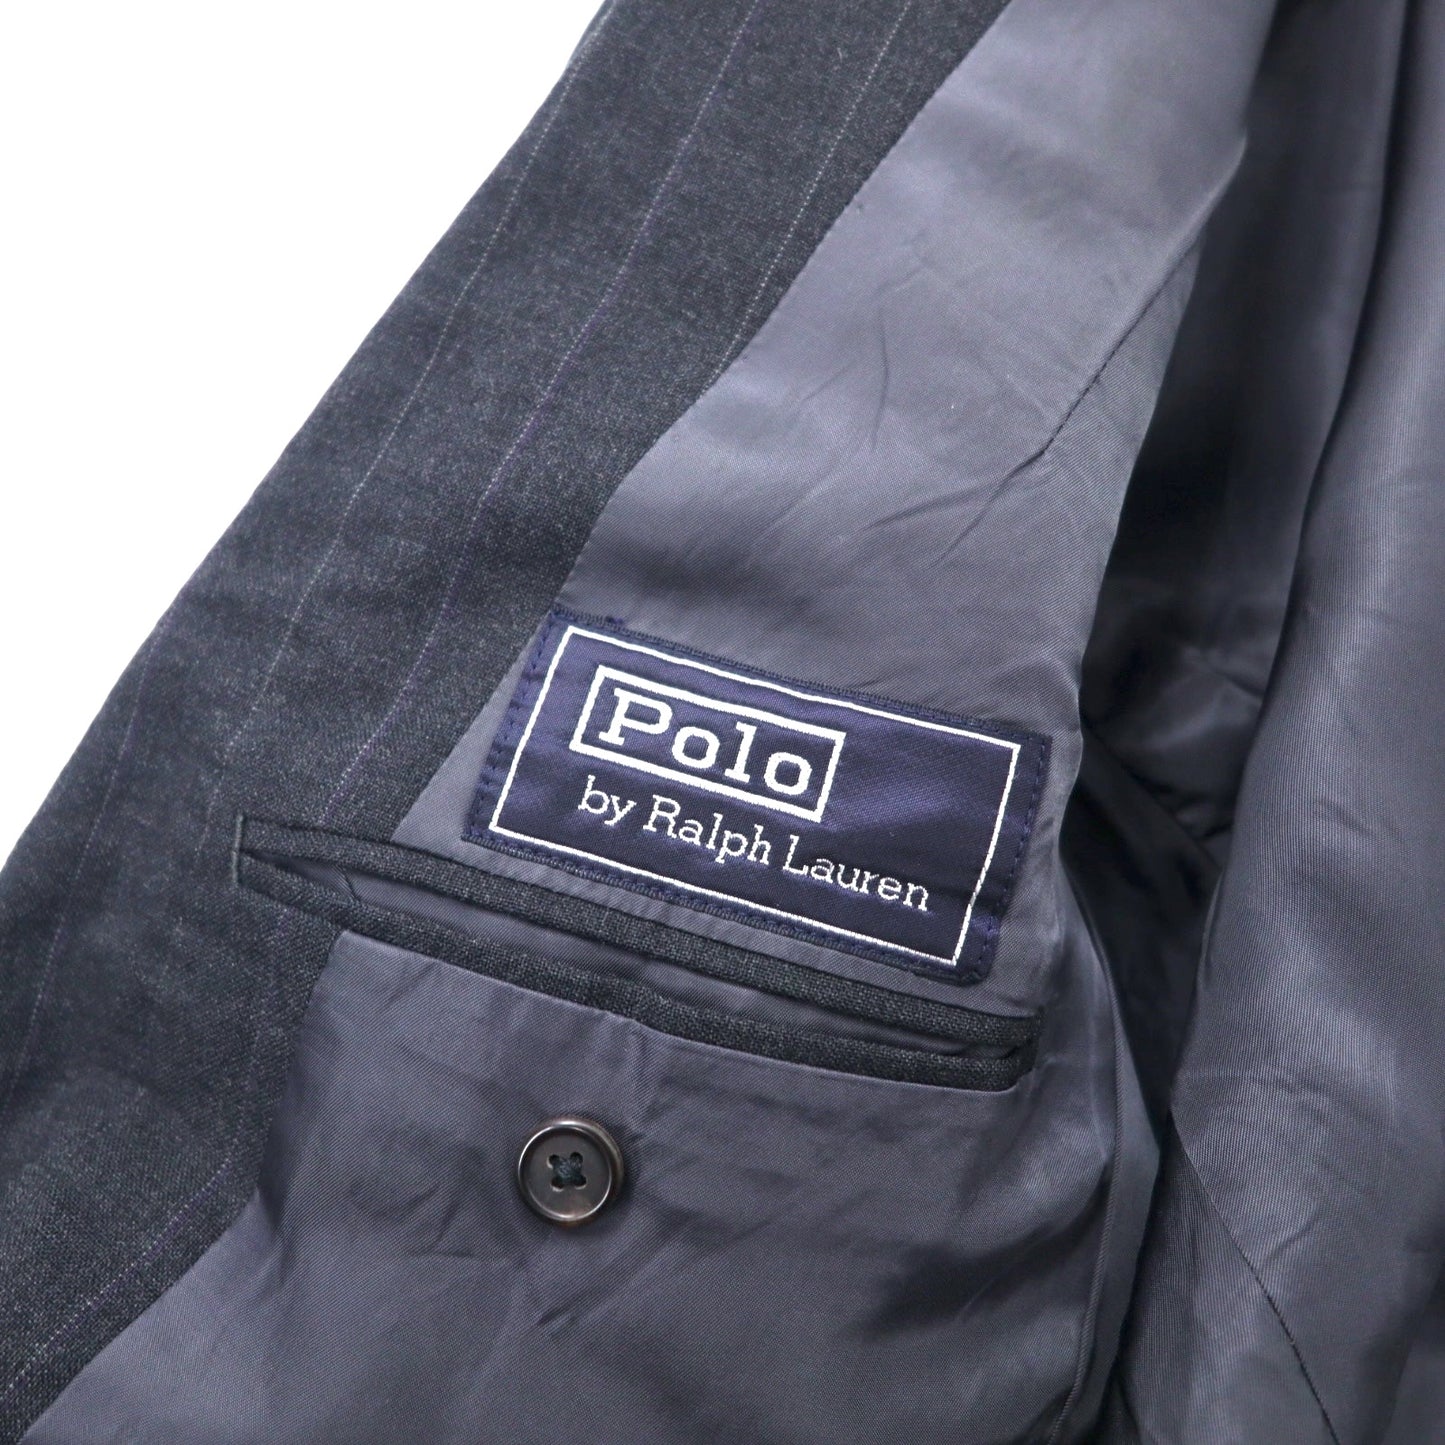 Polo by Ralph Lauren 2B スーツ セットアップ 175 グレー ストライプ ウール サスペンダーボタン 日本製